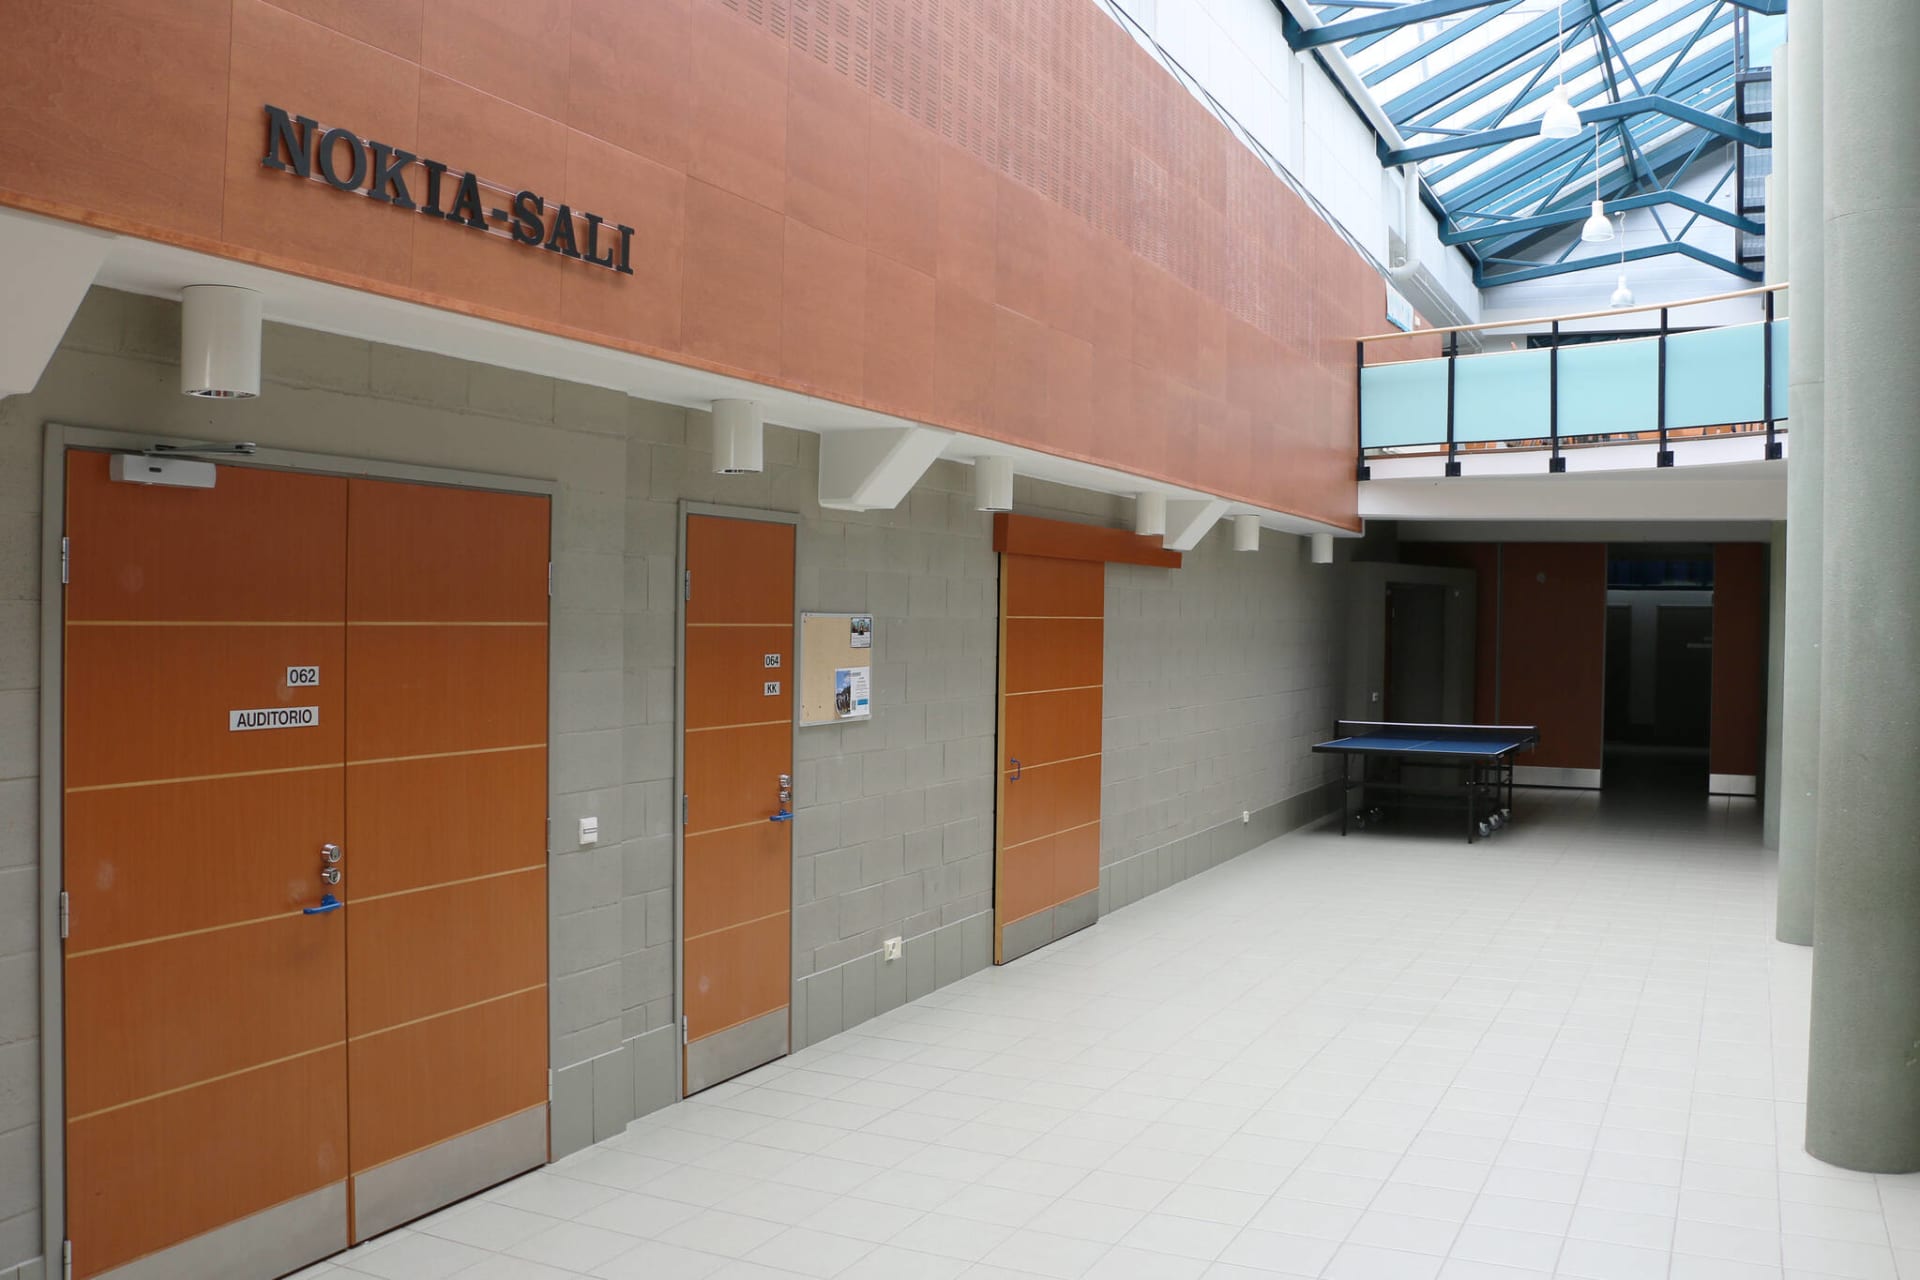 Nokia-salin ovet aulasta kuvattuna